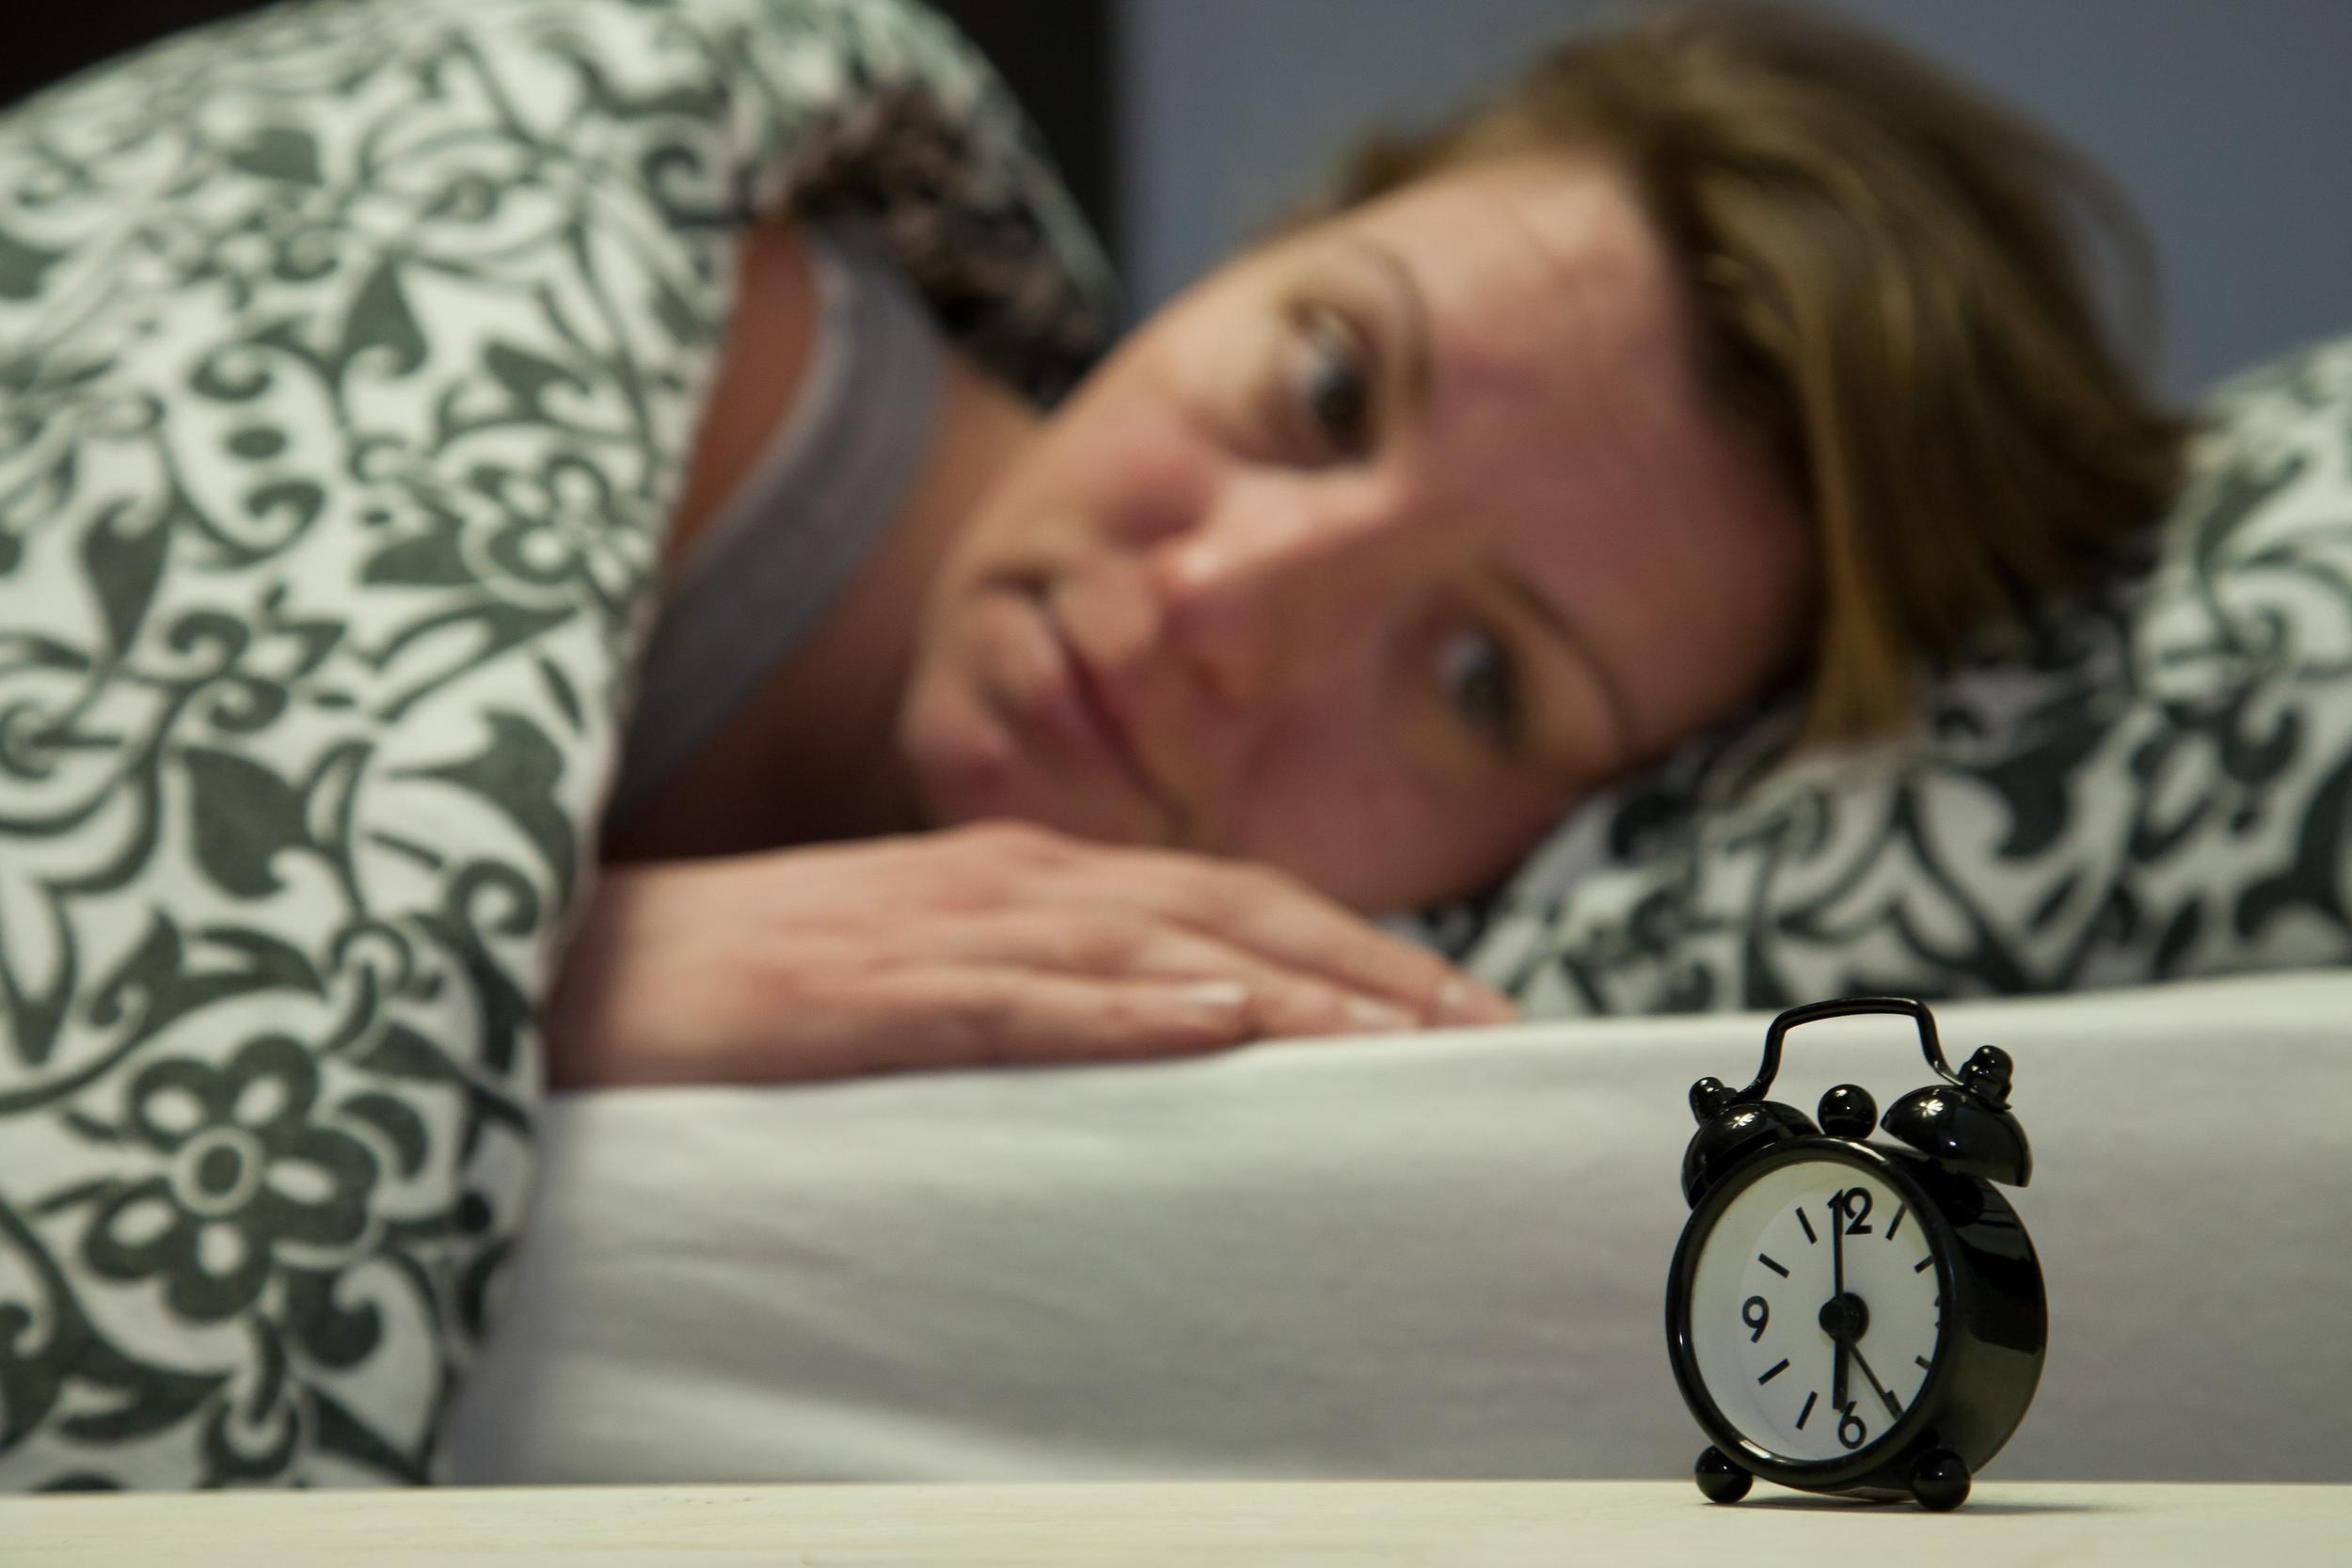 انتبهوا.. قلة النوم تؤدي إلى هذه الأعراض الخطيرة!